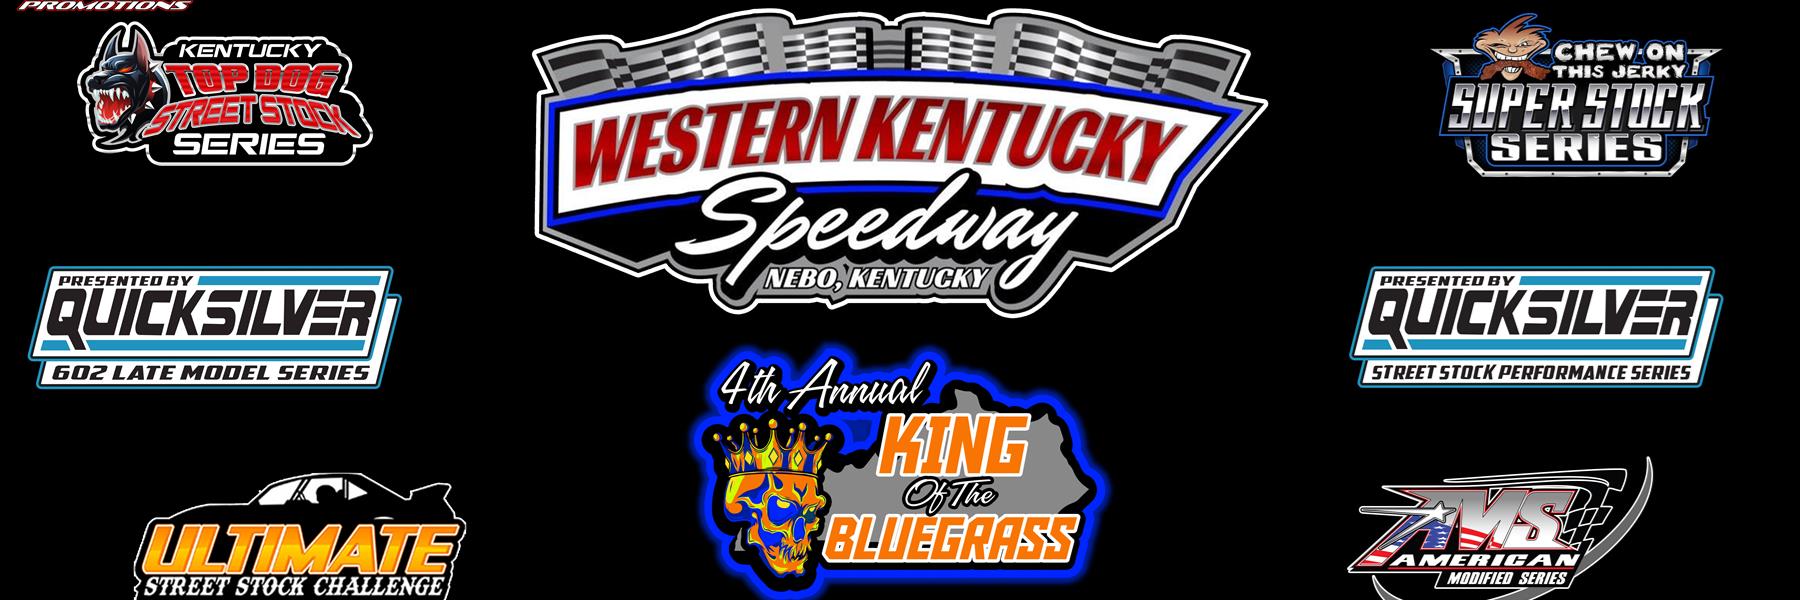 5/21/2022 - Western Kentucky Speedway